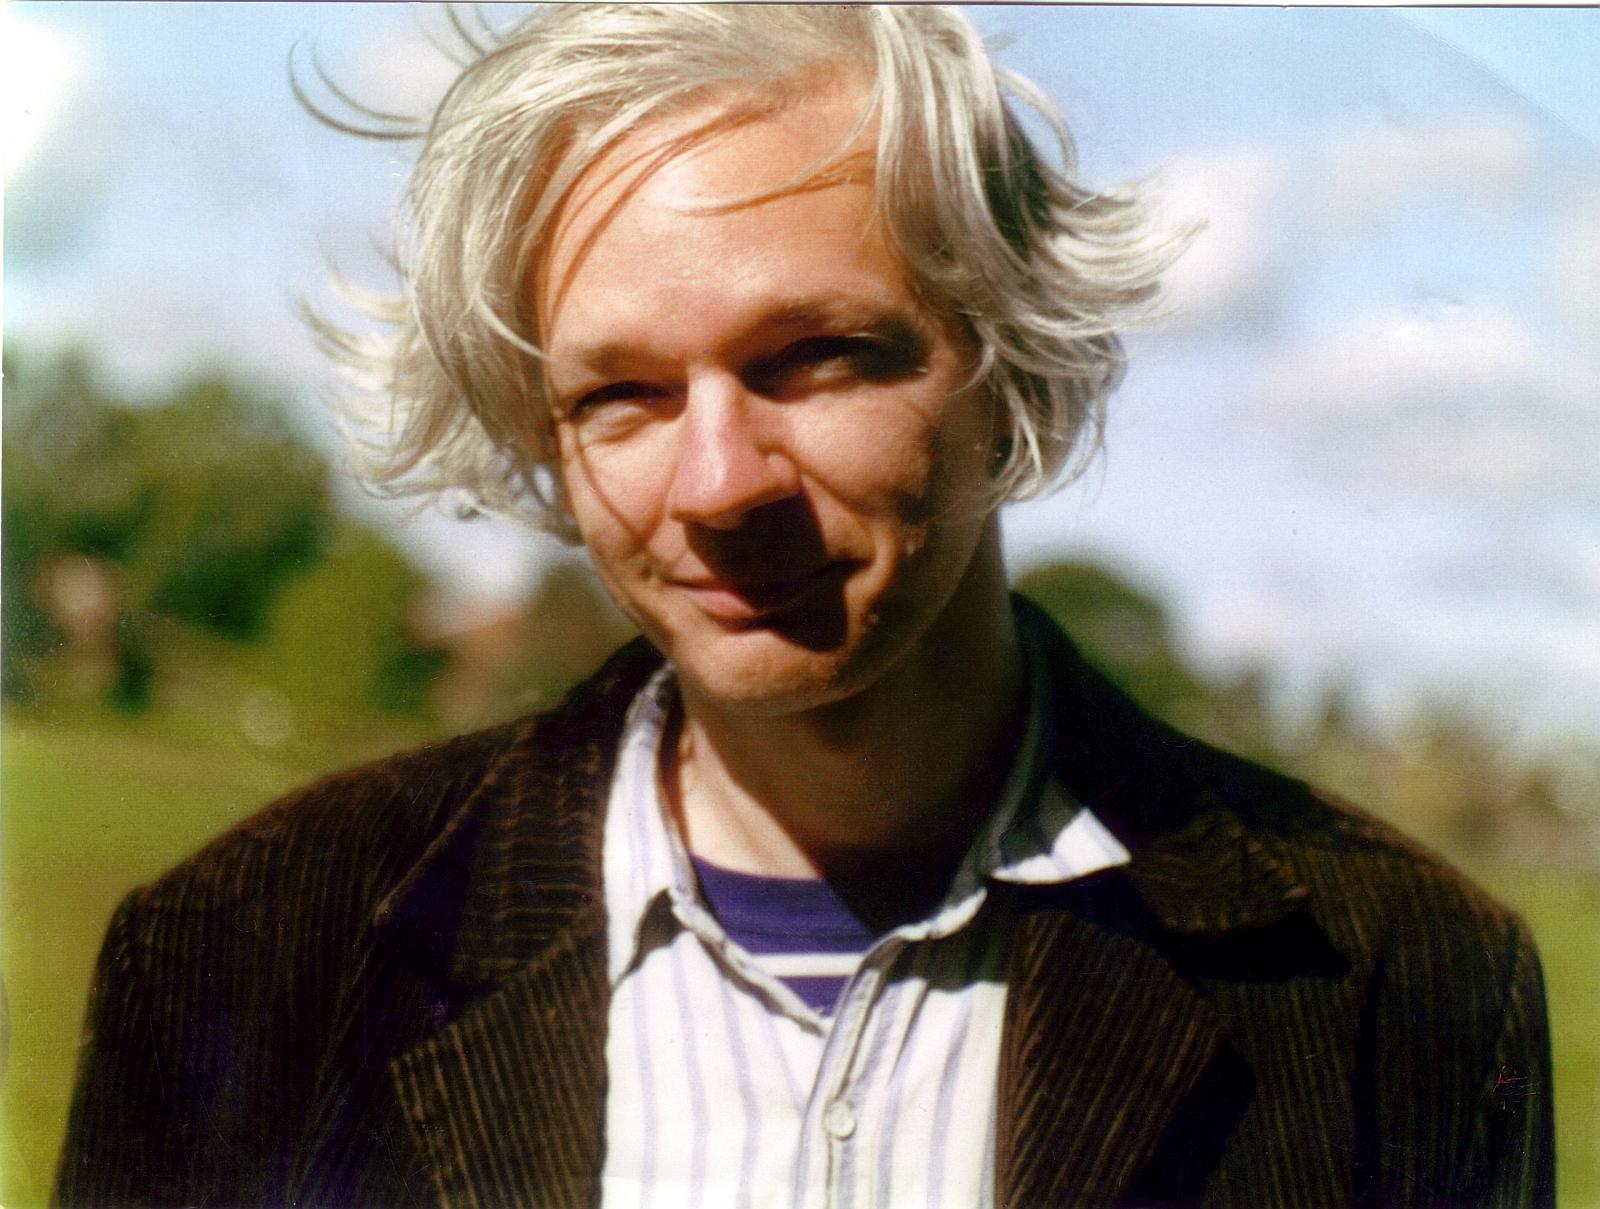 Julian_Assange_f2006-when he wrote